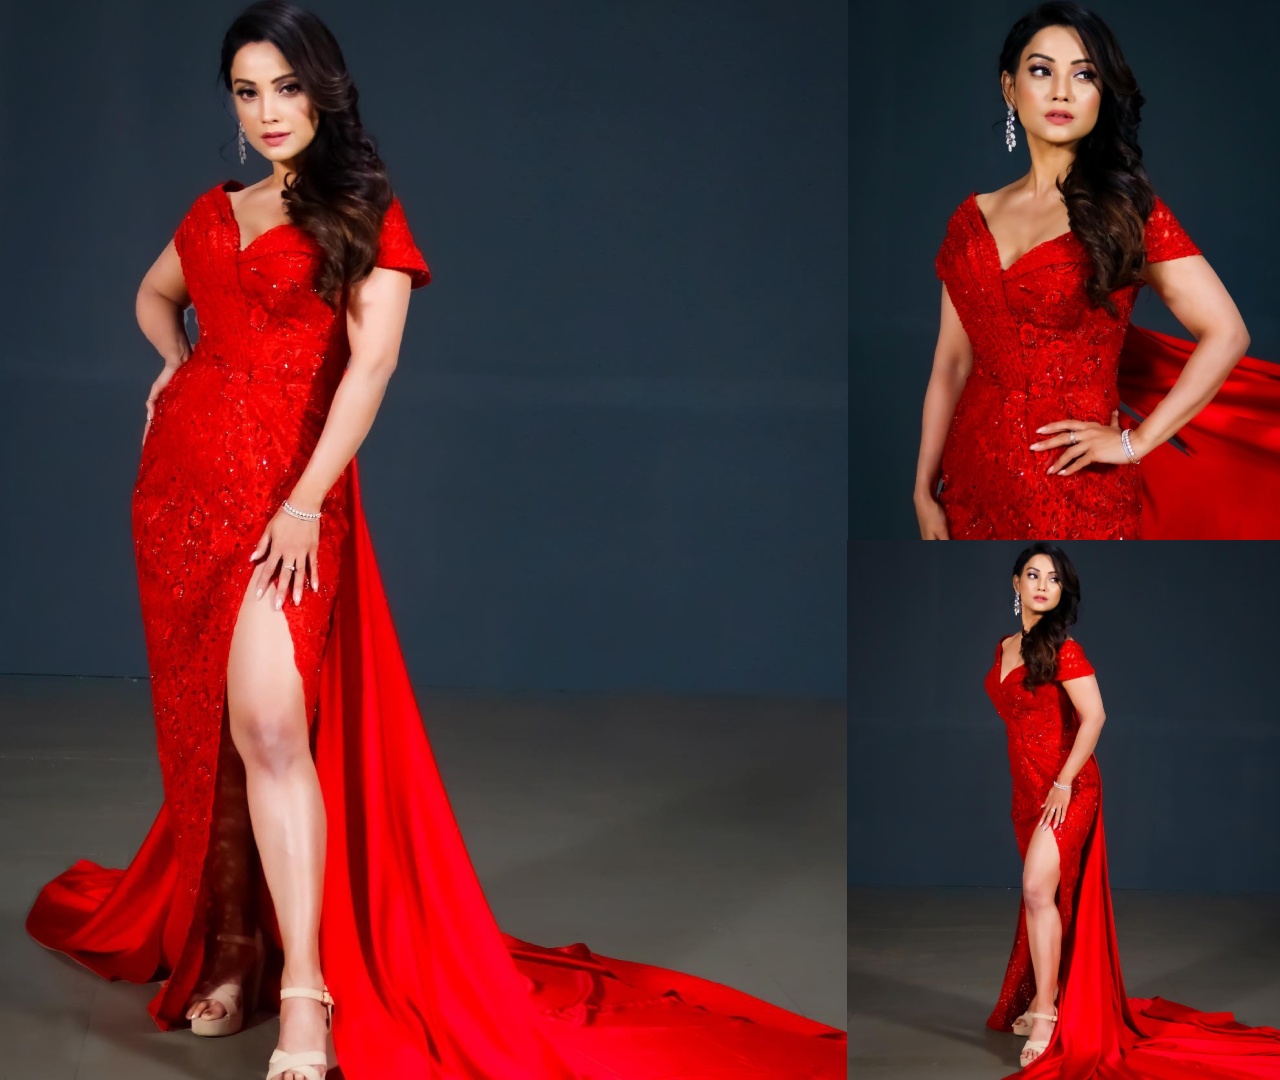 थाई-हाई स्लिट ड्रेस में बला की खूबसूरत लगती है अदा खान, देखें कमाल के लुक्स 44986